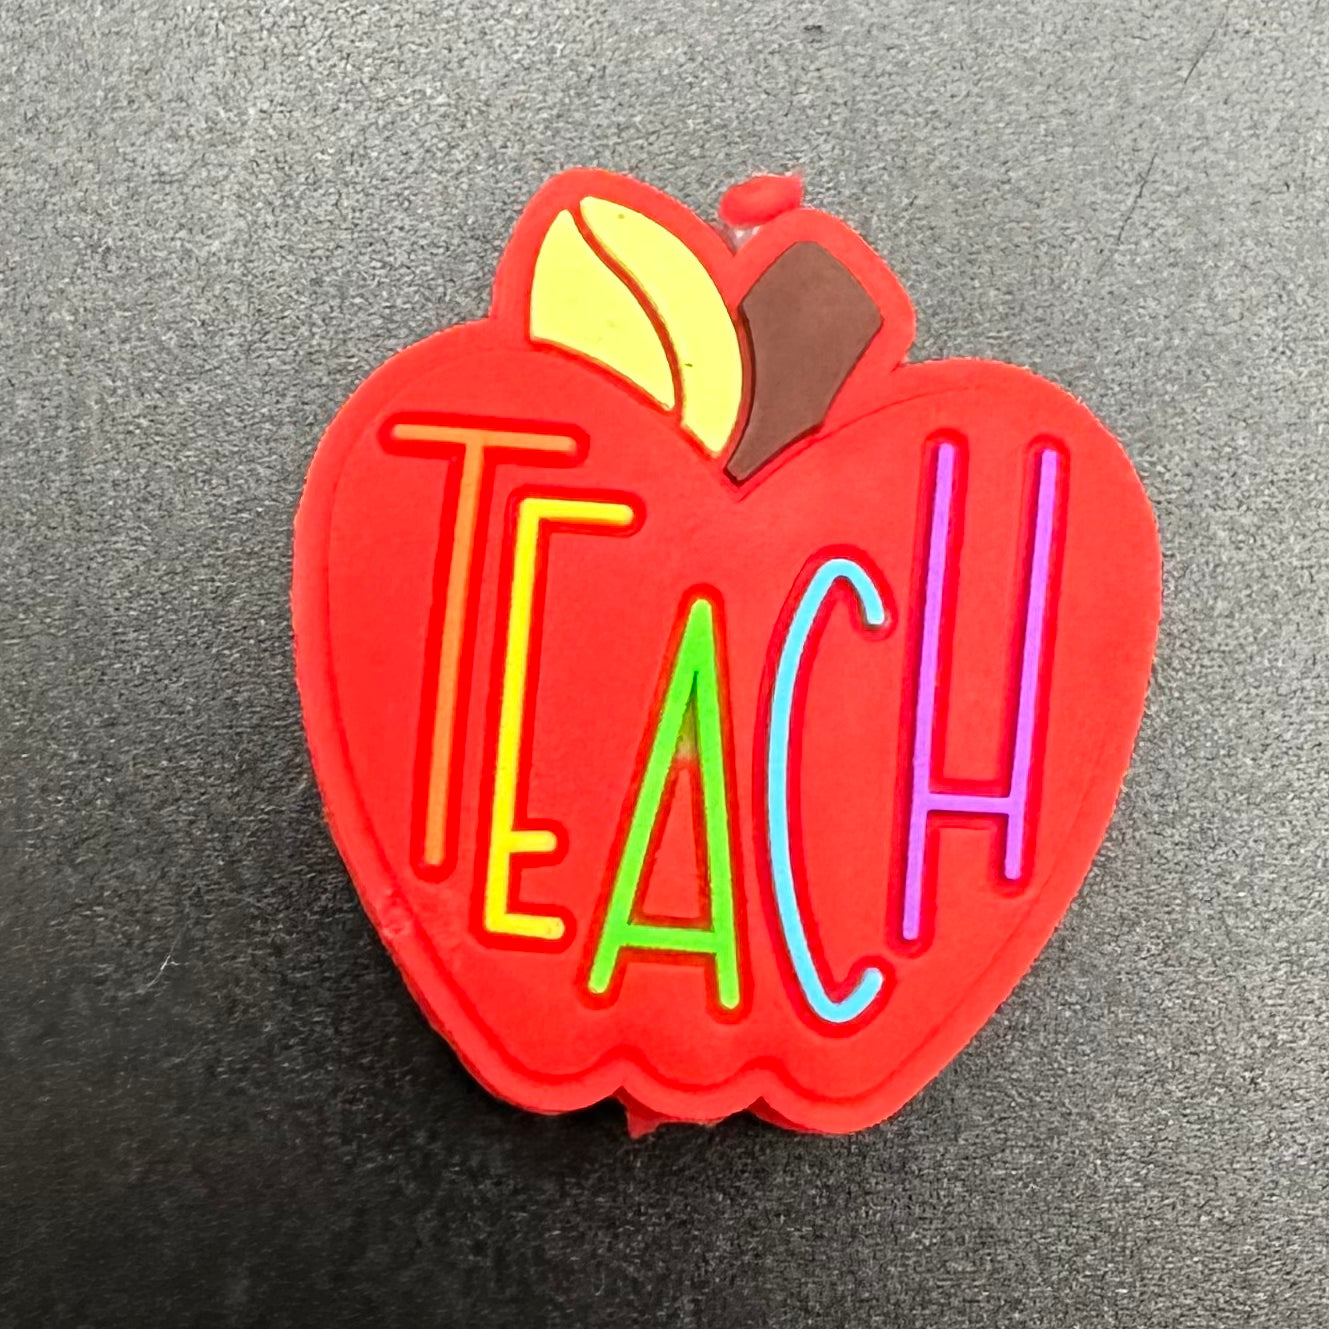 Focal Bead, Teach Apple-Red